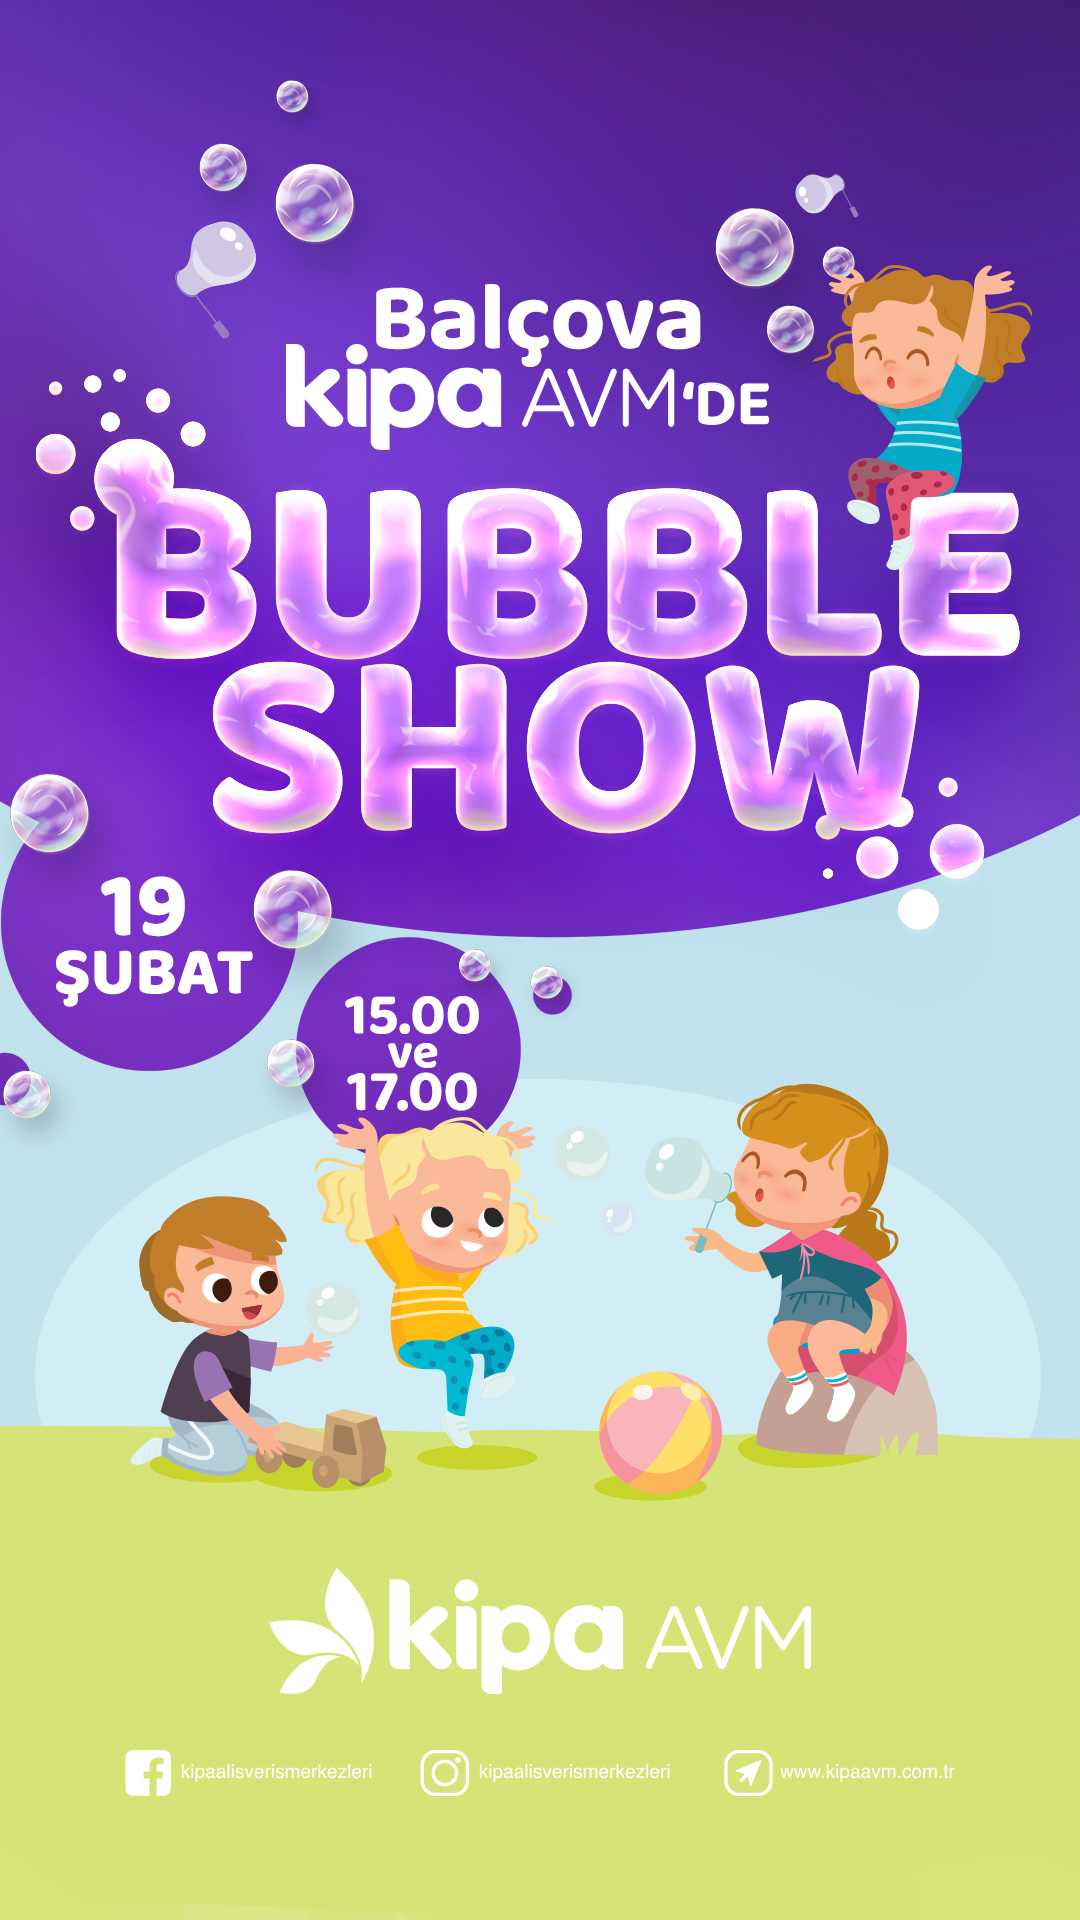 Balçova Kipa AVM'de Bubble Show!
